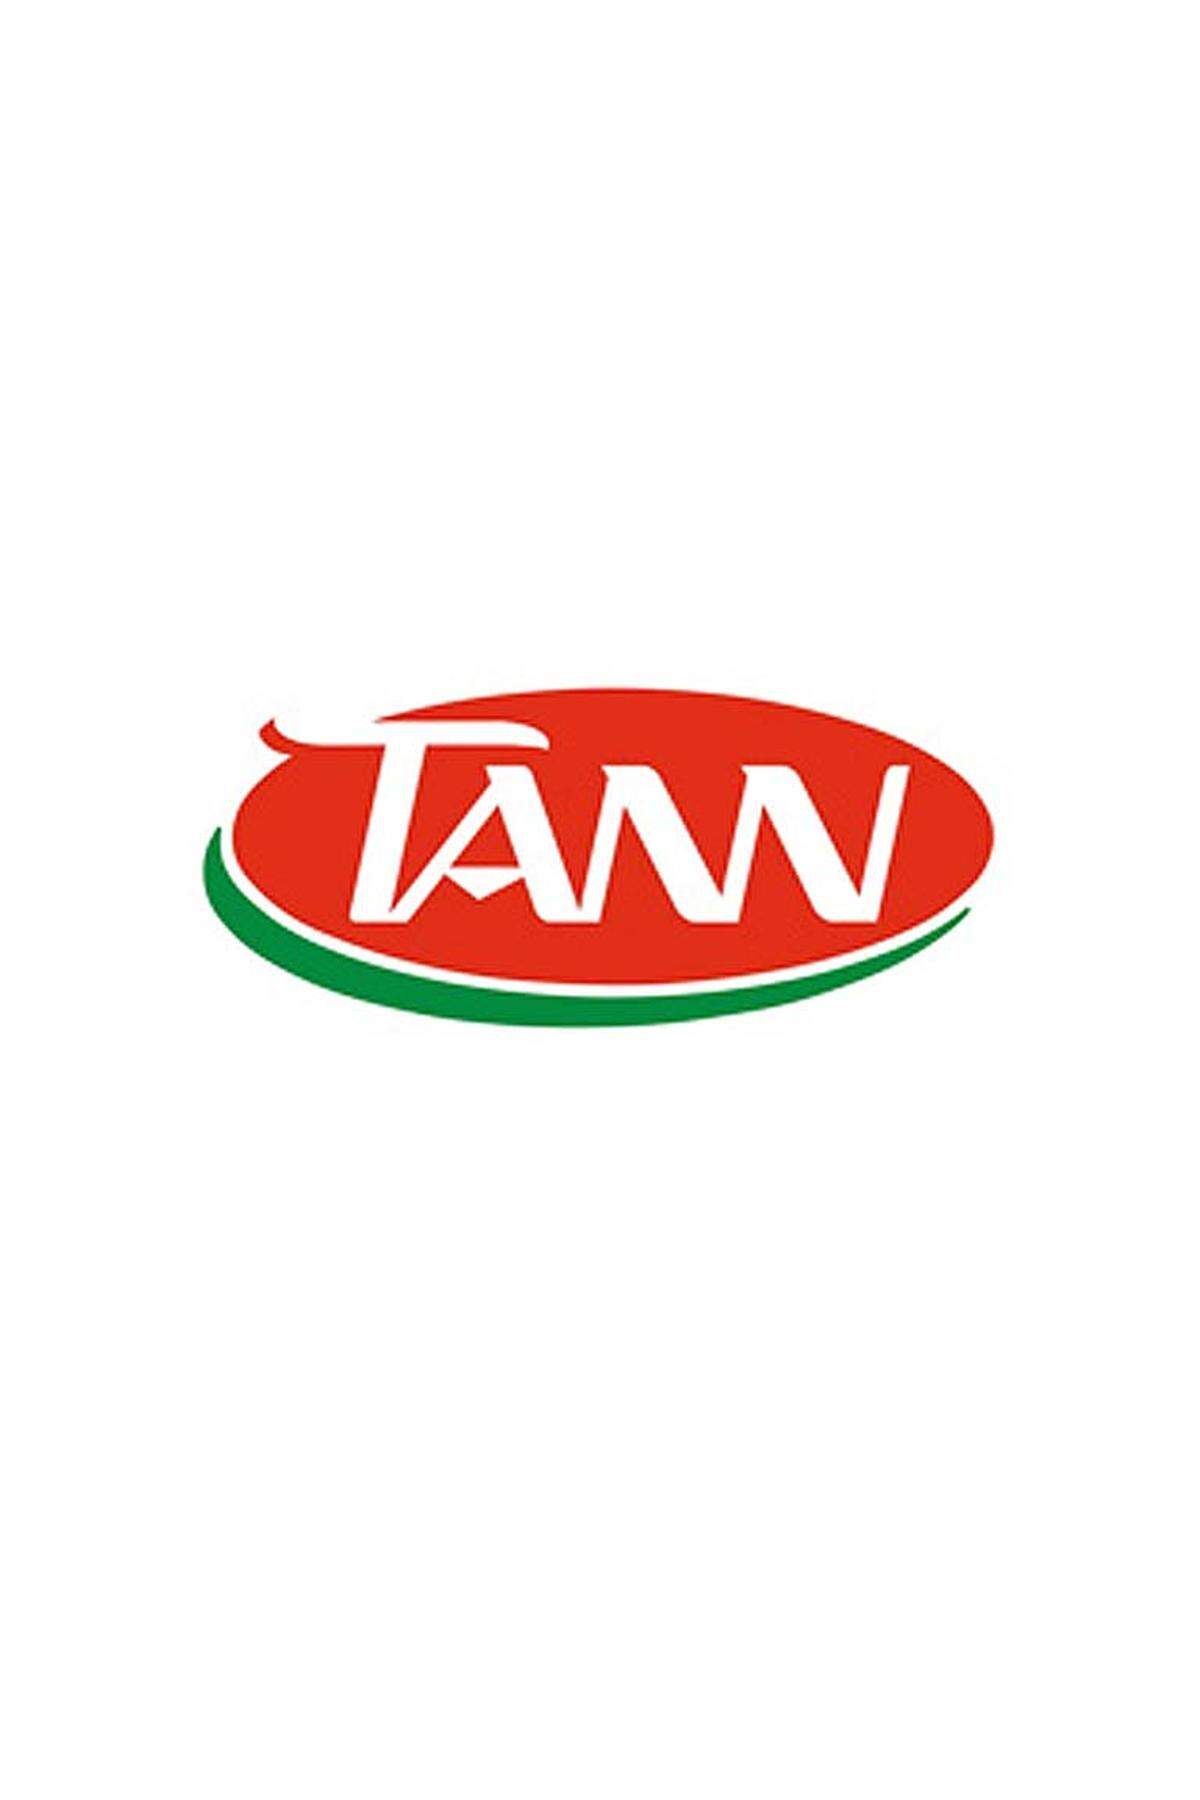 Tann ist eine Eigenmarke von Spar. Vermarktet werden Fleisch- und Wurstwaren. Tann Frischfleisch ist im Handel mit dem AMA-Gütesiegel versehen. Die Tiere sind in Österreich geboren und werden hier gemästet, geschlachtet und verarbeitet.